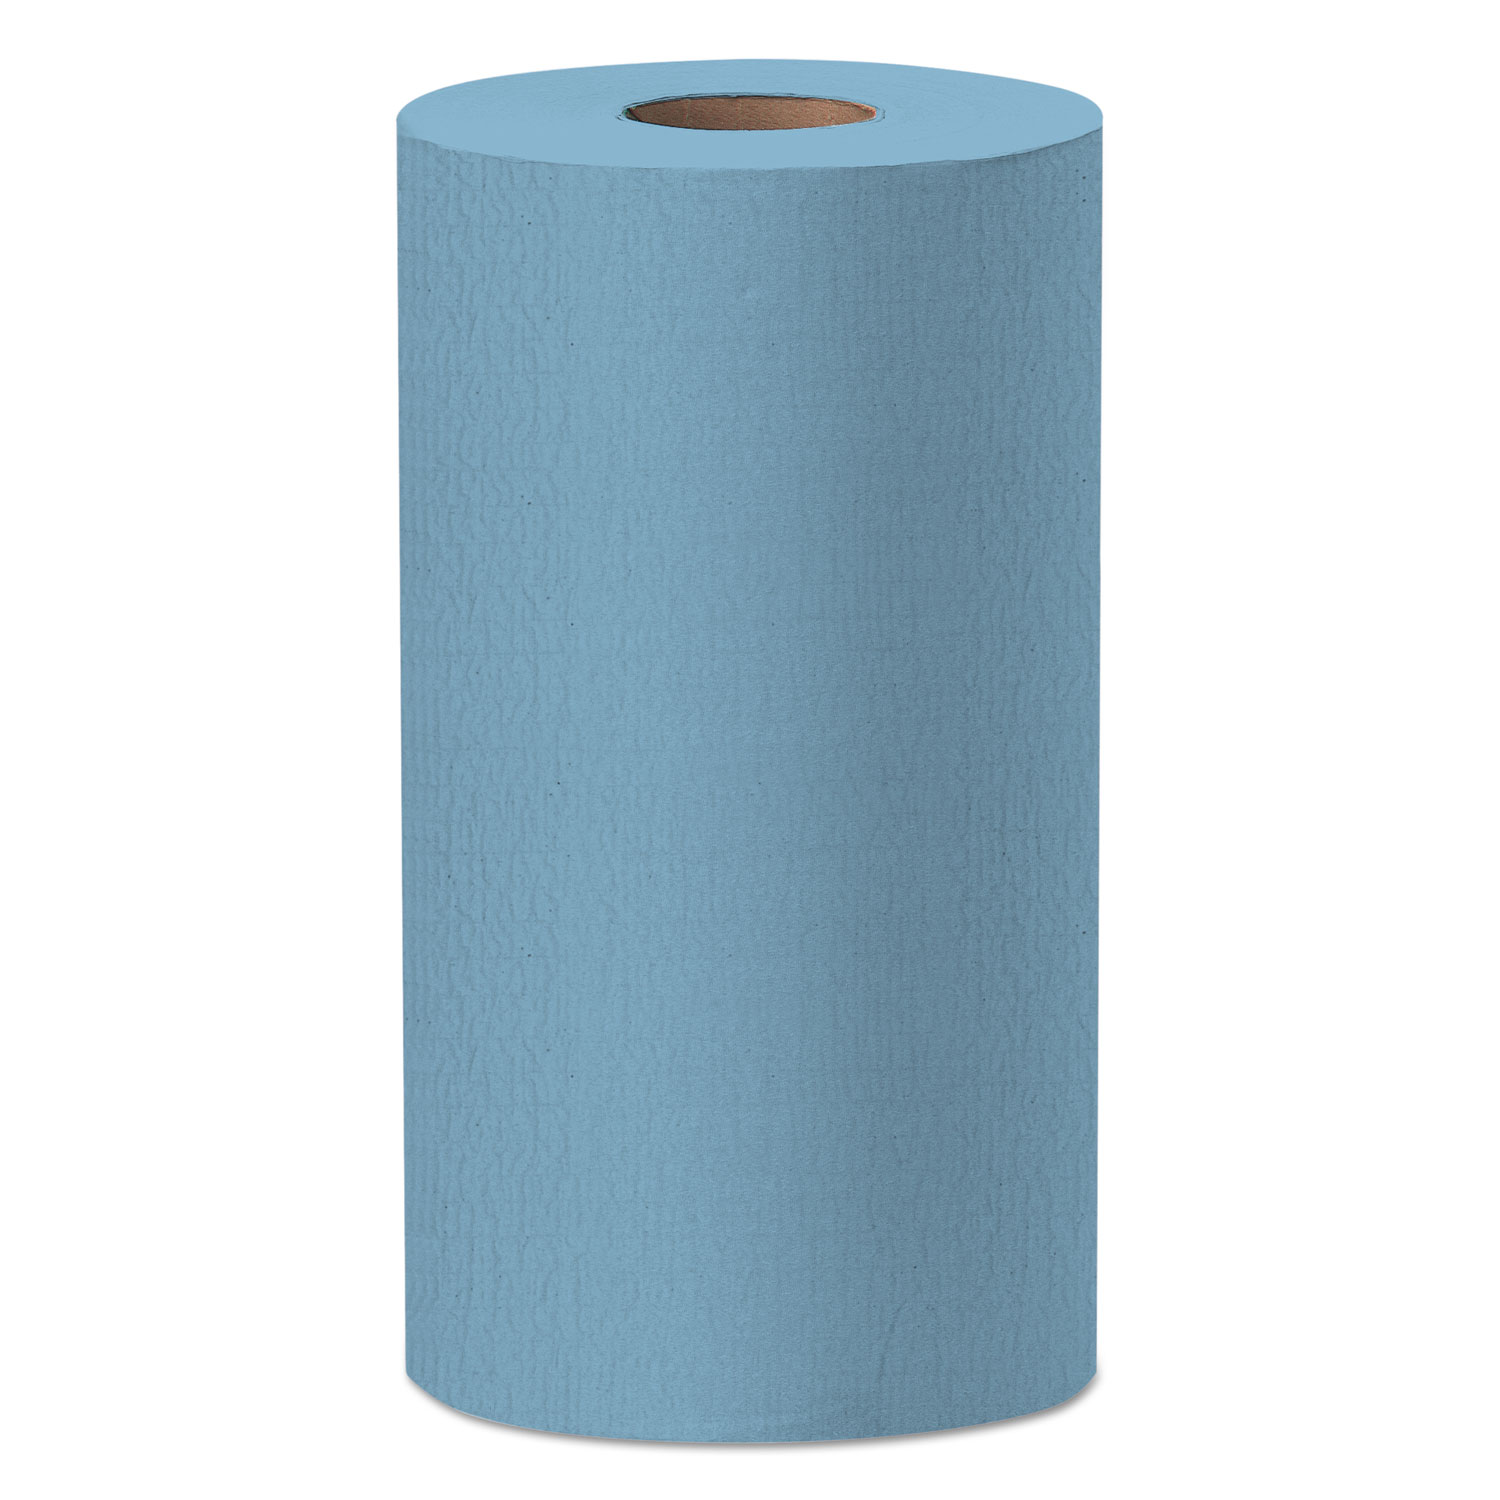  WypAll 35411 X60 Cloths, Small Roll, 9 4/5 x 13 2/5, Blue, 130/Roll (KCC35411) 